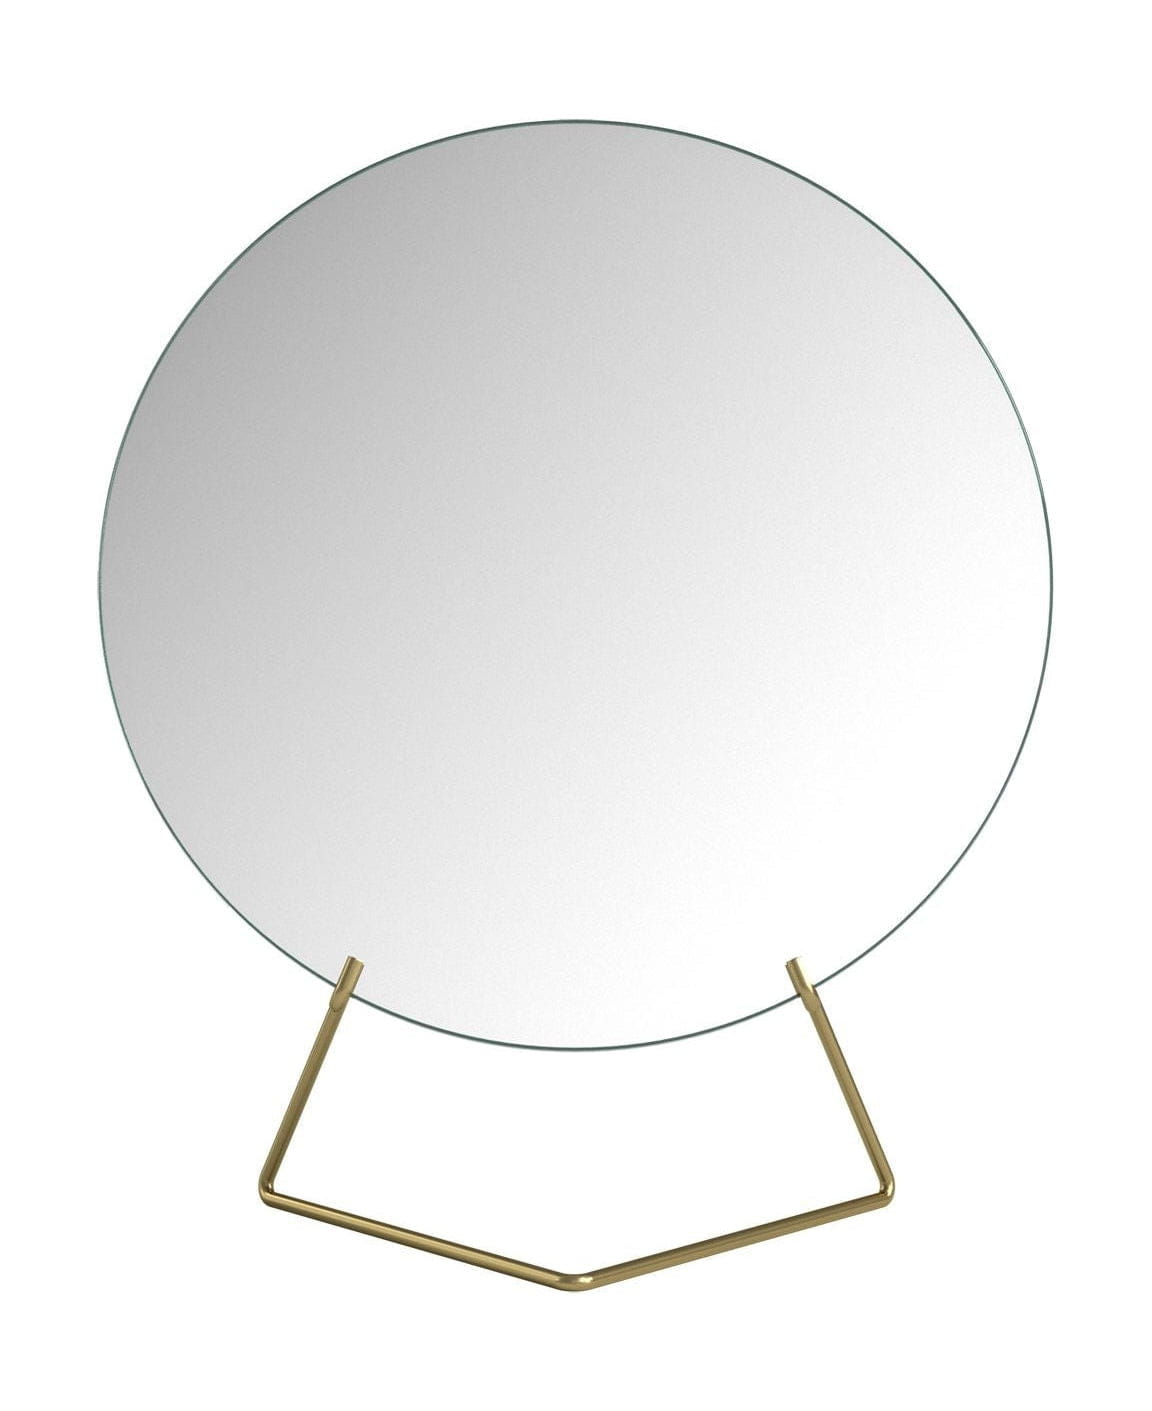 Moebe Standing Mirror Spejl Ø20 Cm, Messing-Moebe-662268485-MIBR20-MOE-Allbuy